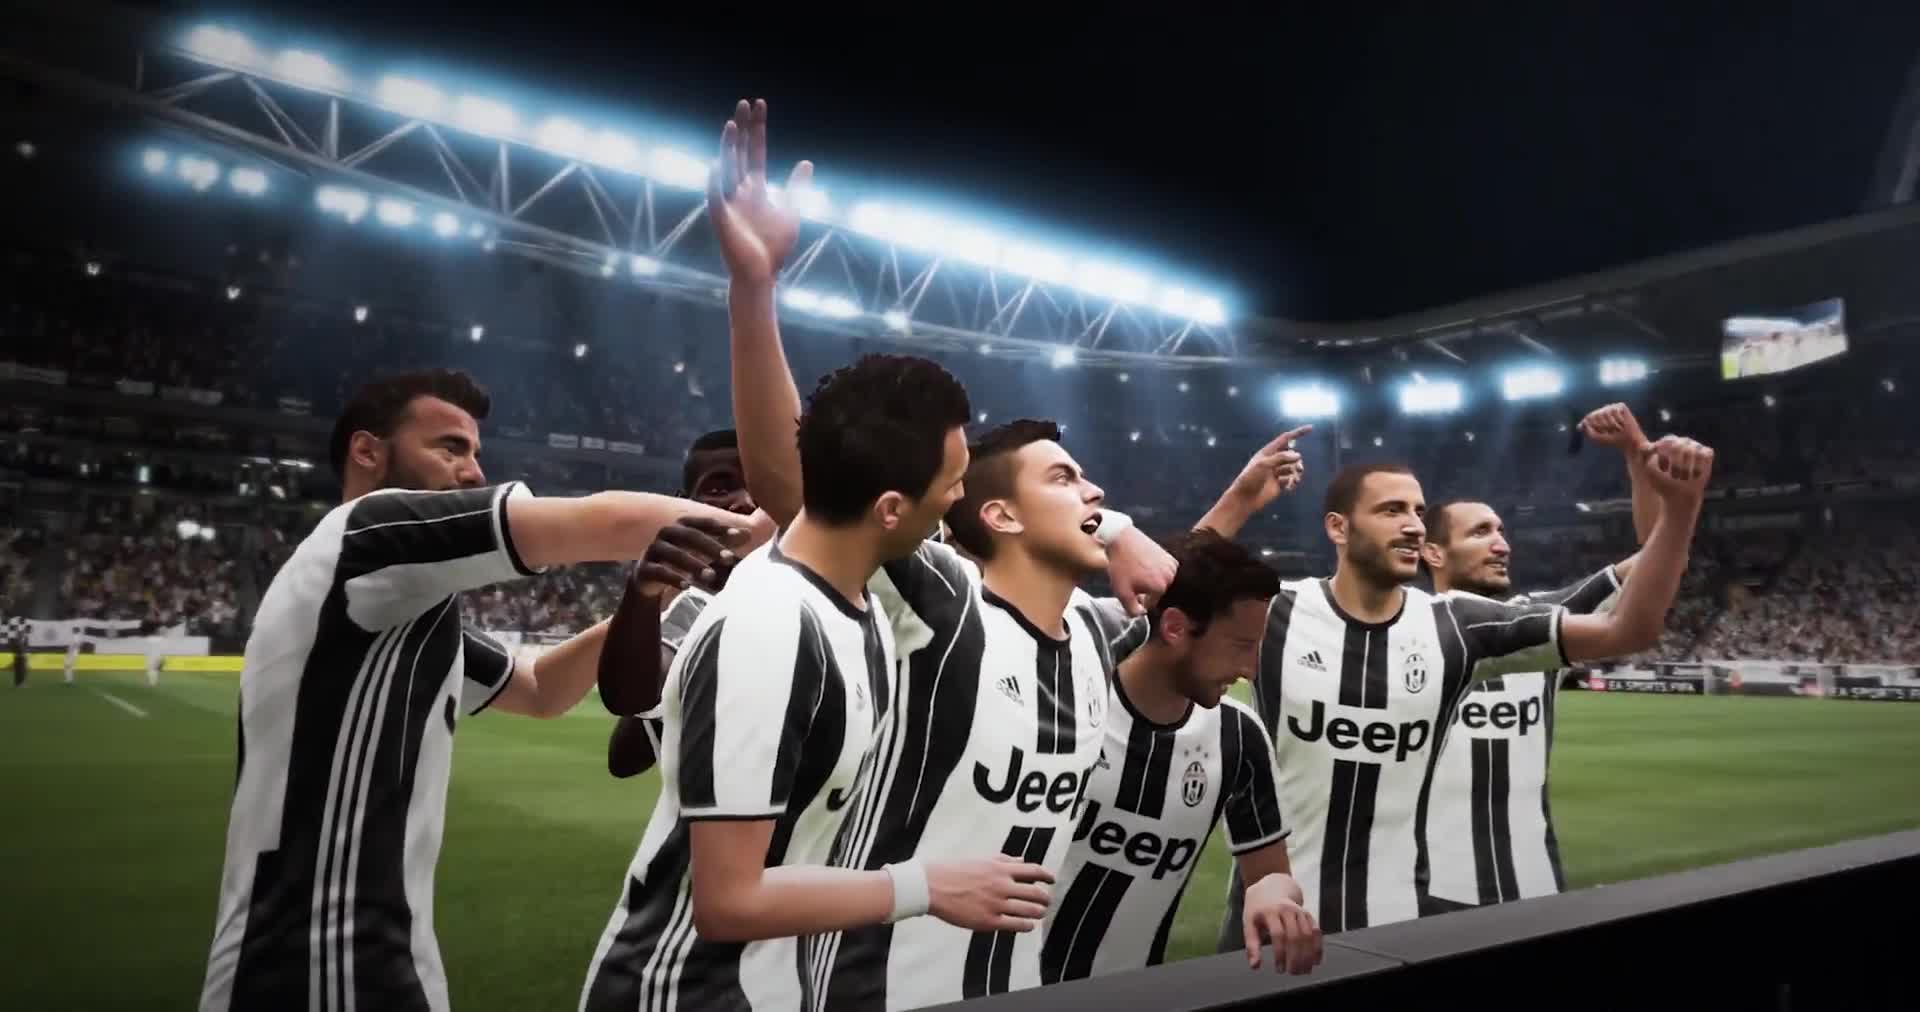 FIFA 17 - Juventus